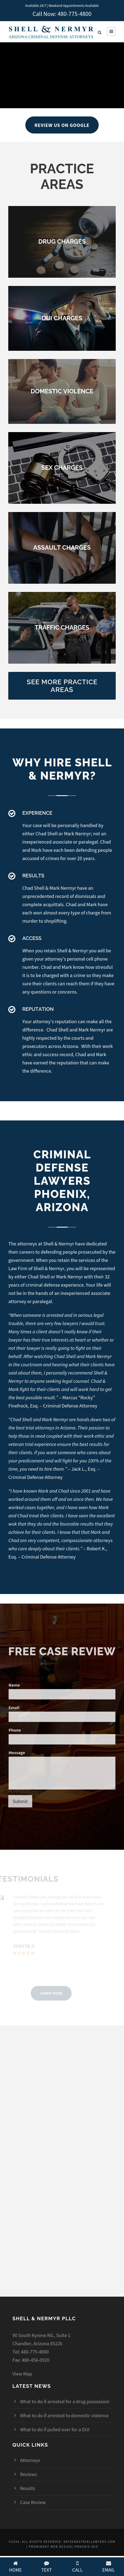 Shell & Nermyr PLLC - Chandler AZ Lawyers